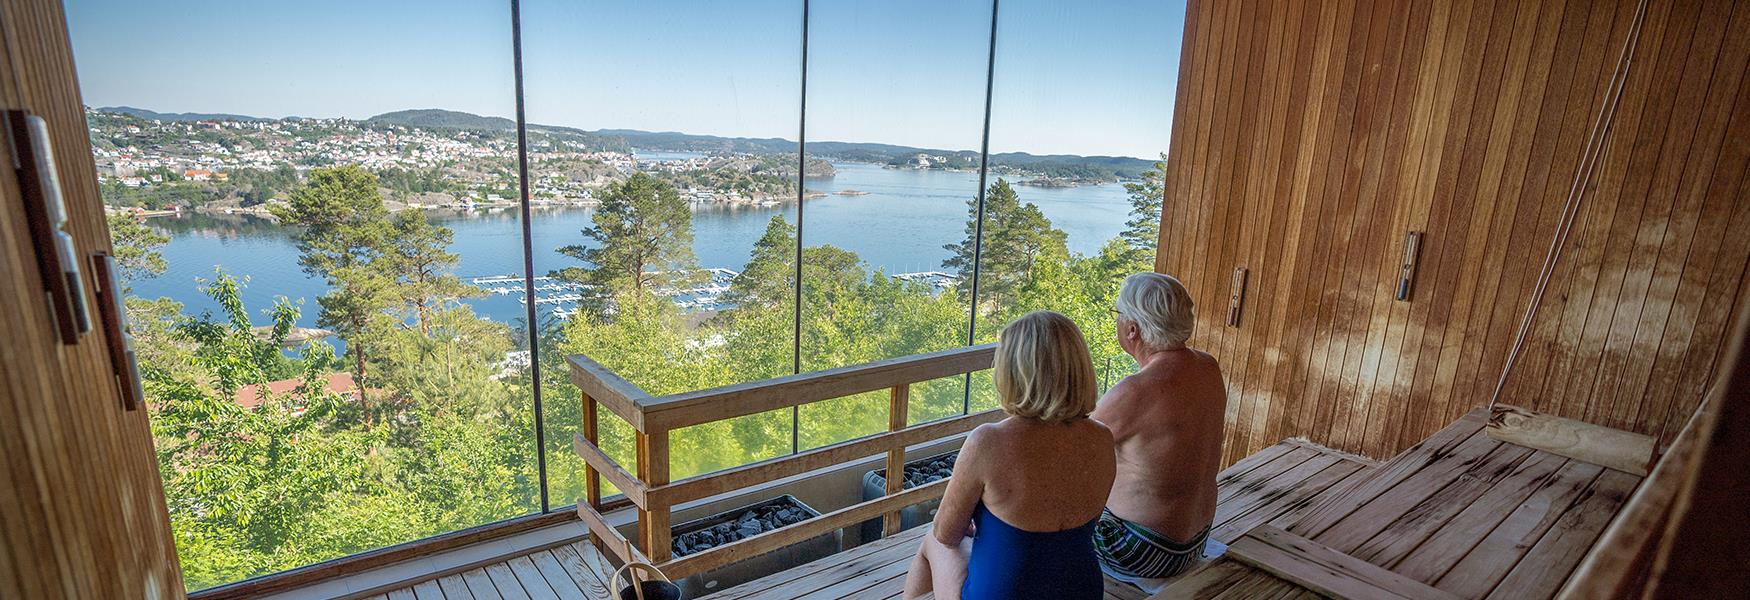 Badstue med flott utsikt over Kragerø finner du på Kragerø Resort